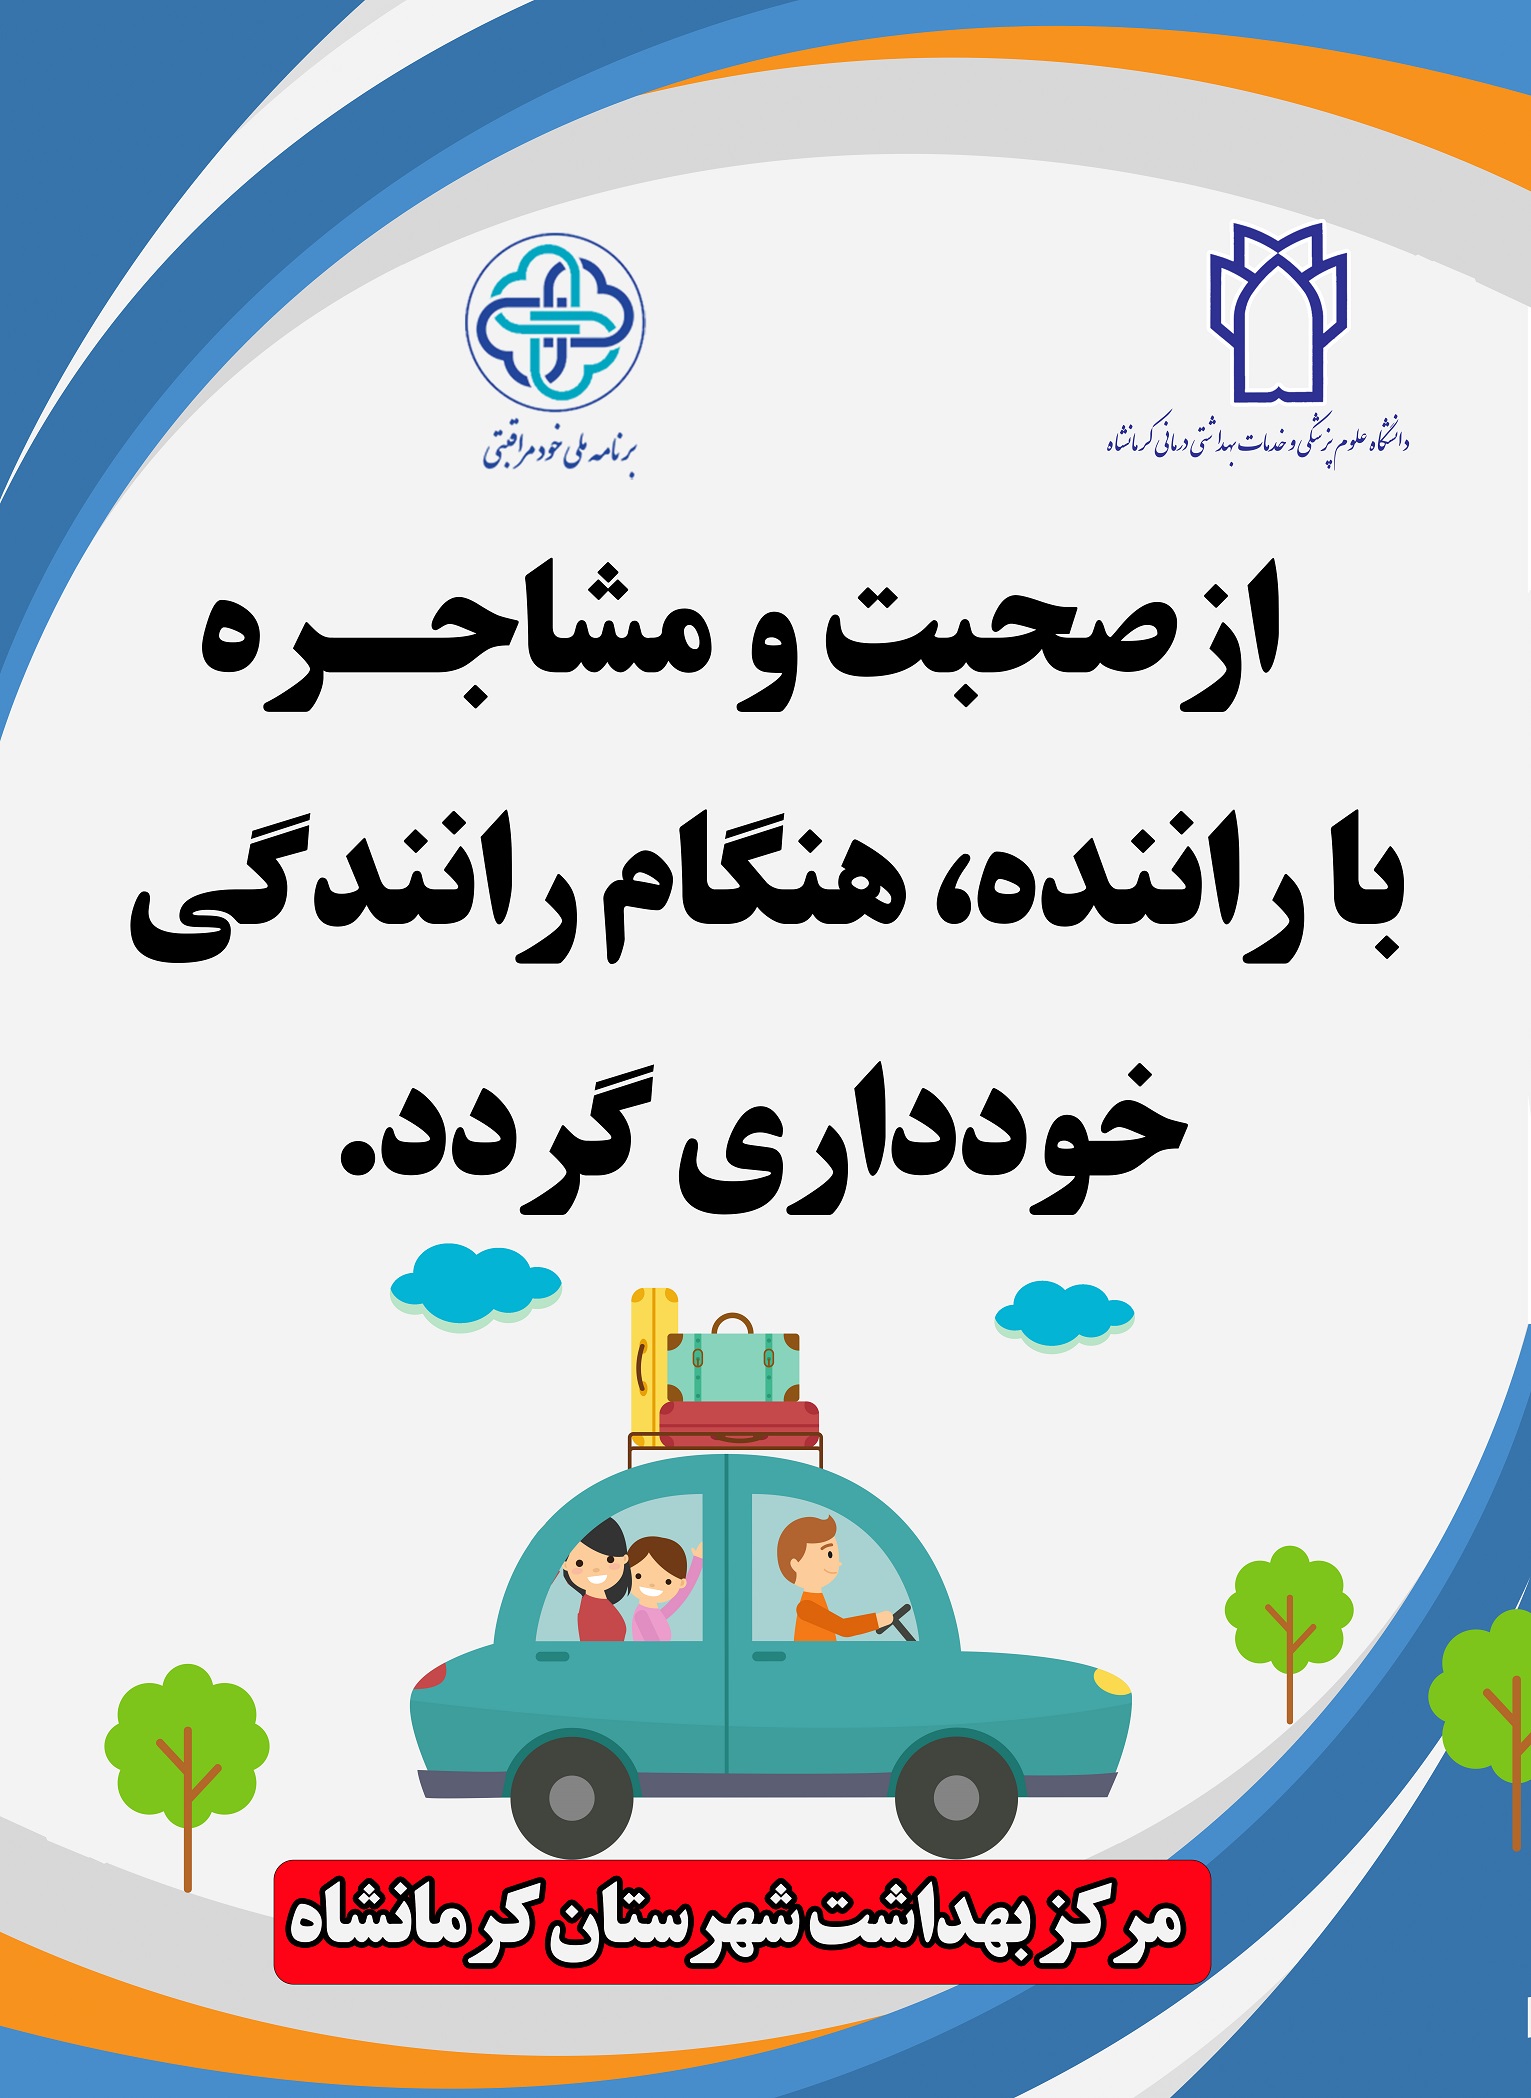 پوسترهای آموزشی مربوط خودمراقبتی شهرستان کرمانشاه 4